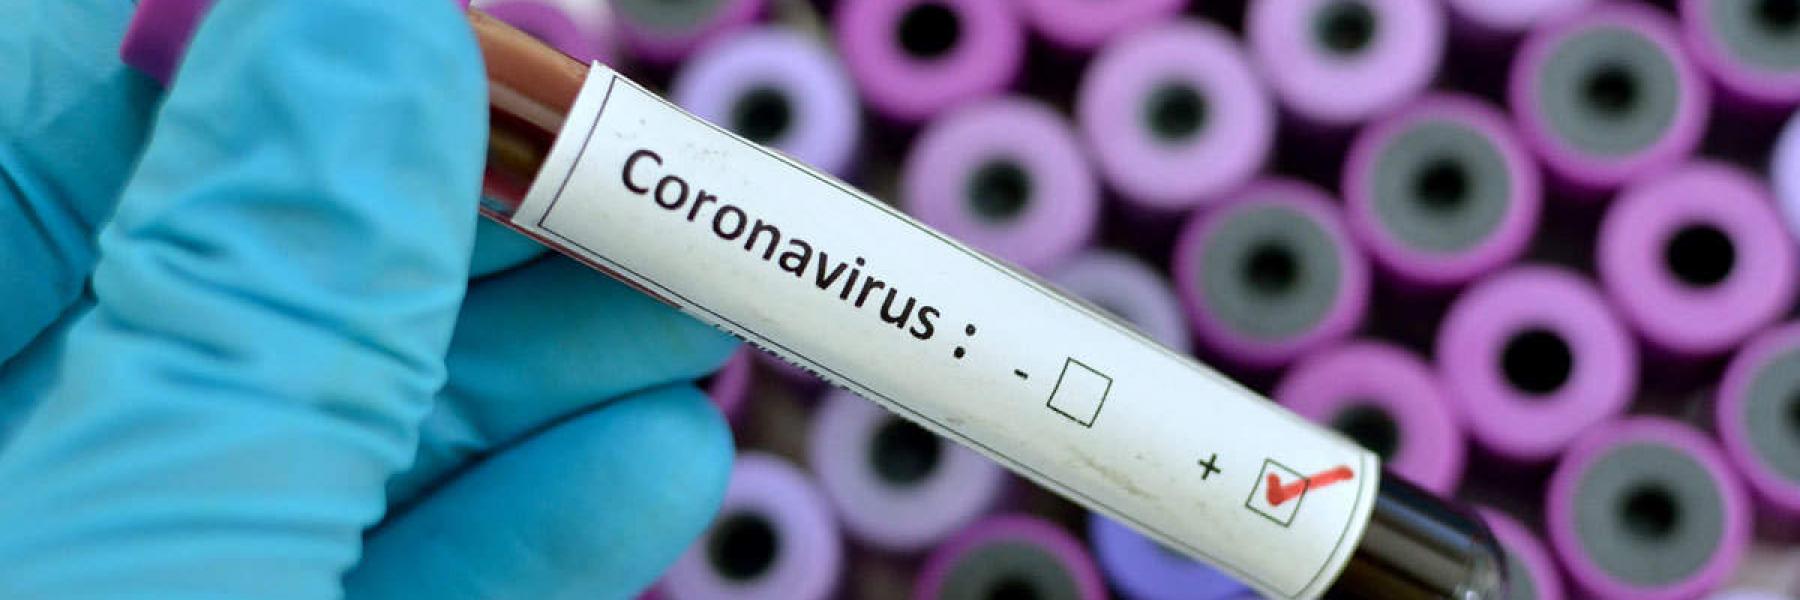 الإصابة بفيروس كورونا مرة أخرى هل يدعو للقلق؟ وماذا يعني ذلك؟